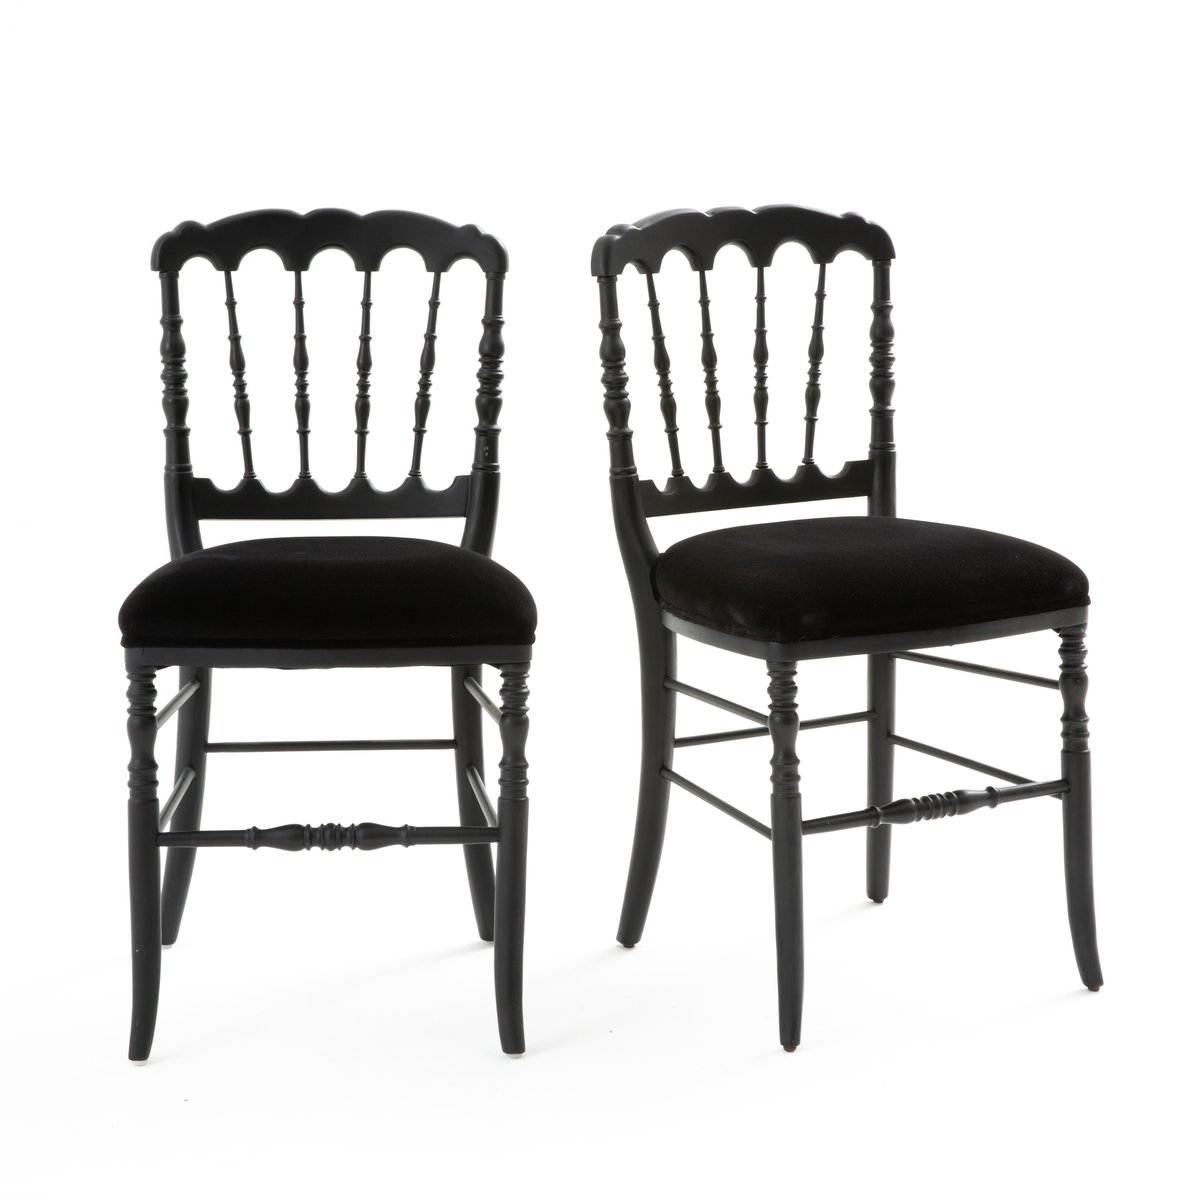 Комплект из 2 стульев в Стиле Наполеона III Lipstick единый размер черный